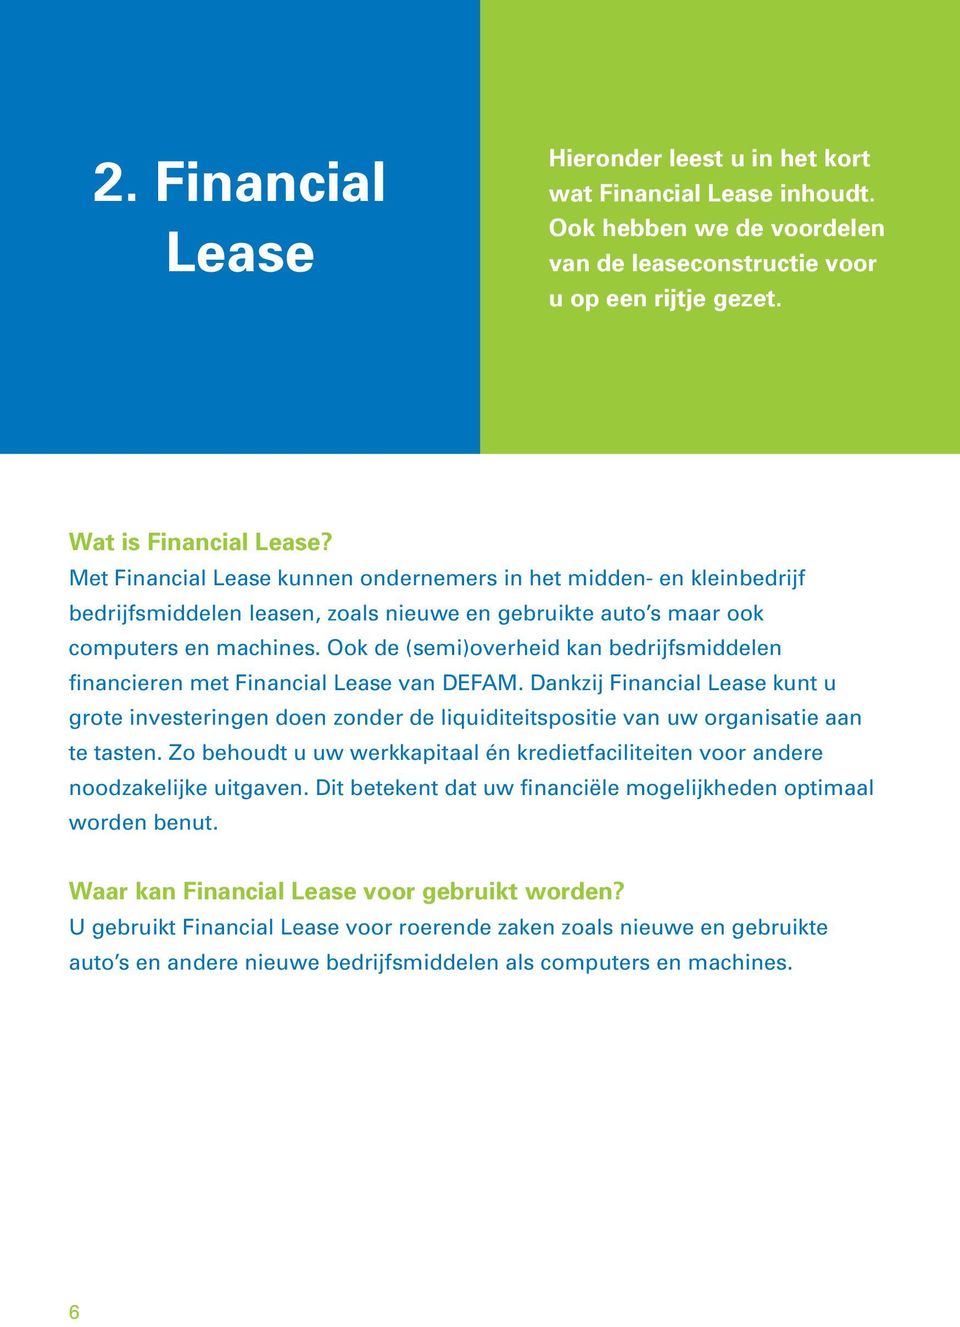 Ook de (semi)overheid kan bedrijfsmiddelen financieren met Financial Lease van DEFAM.